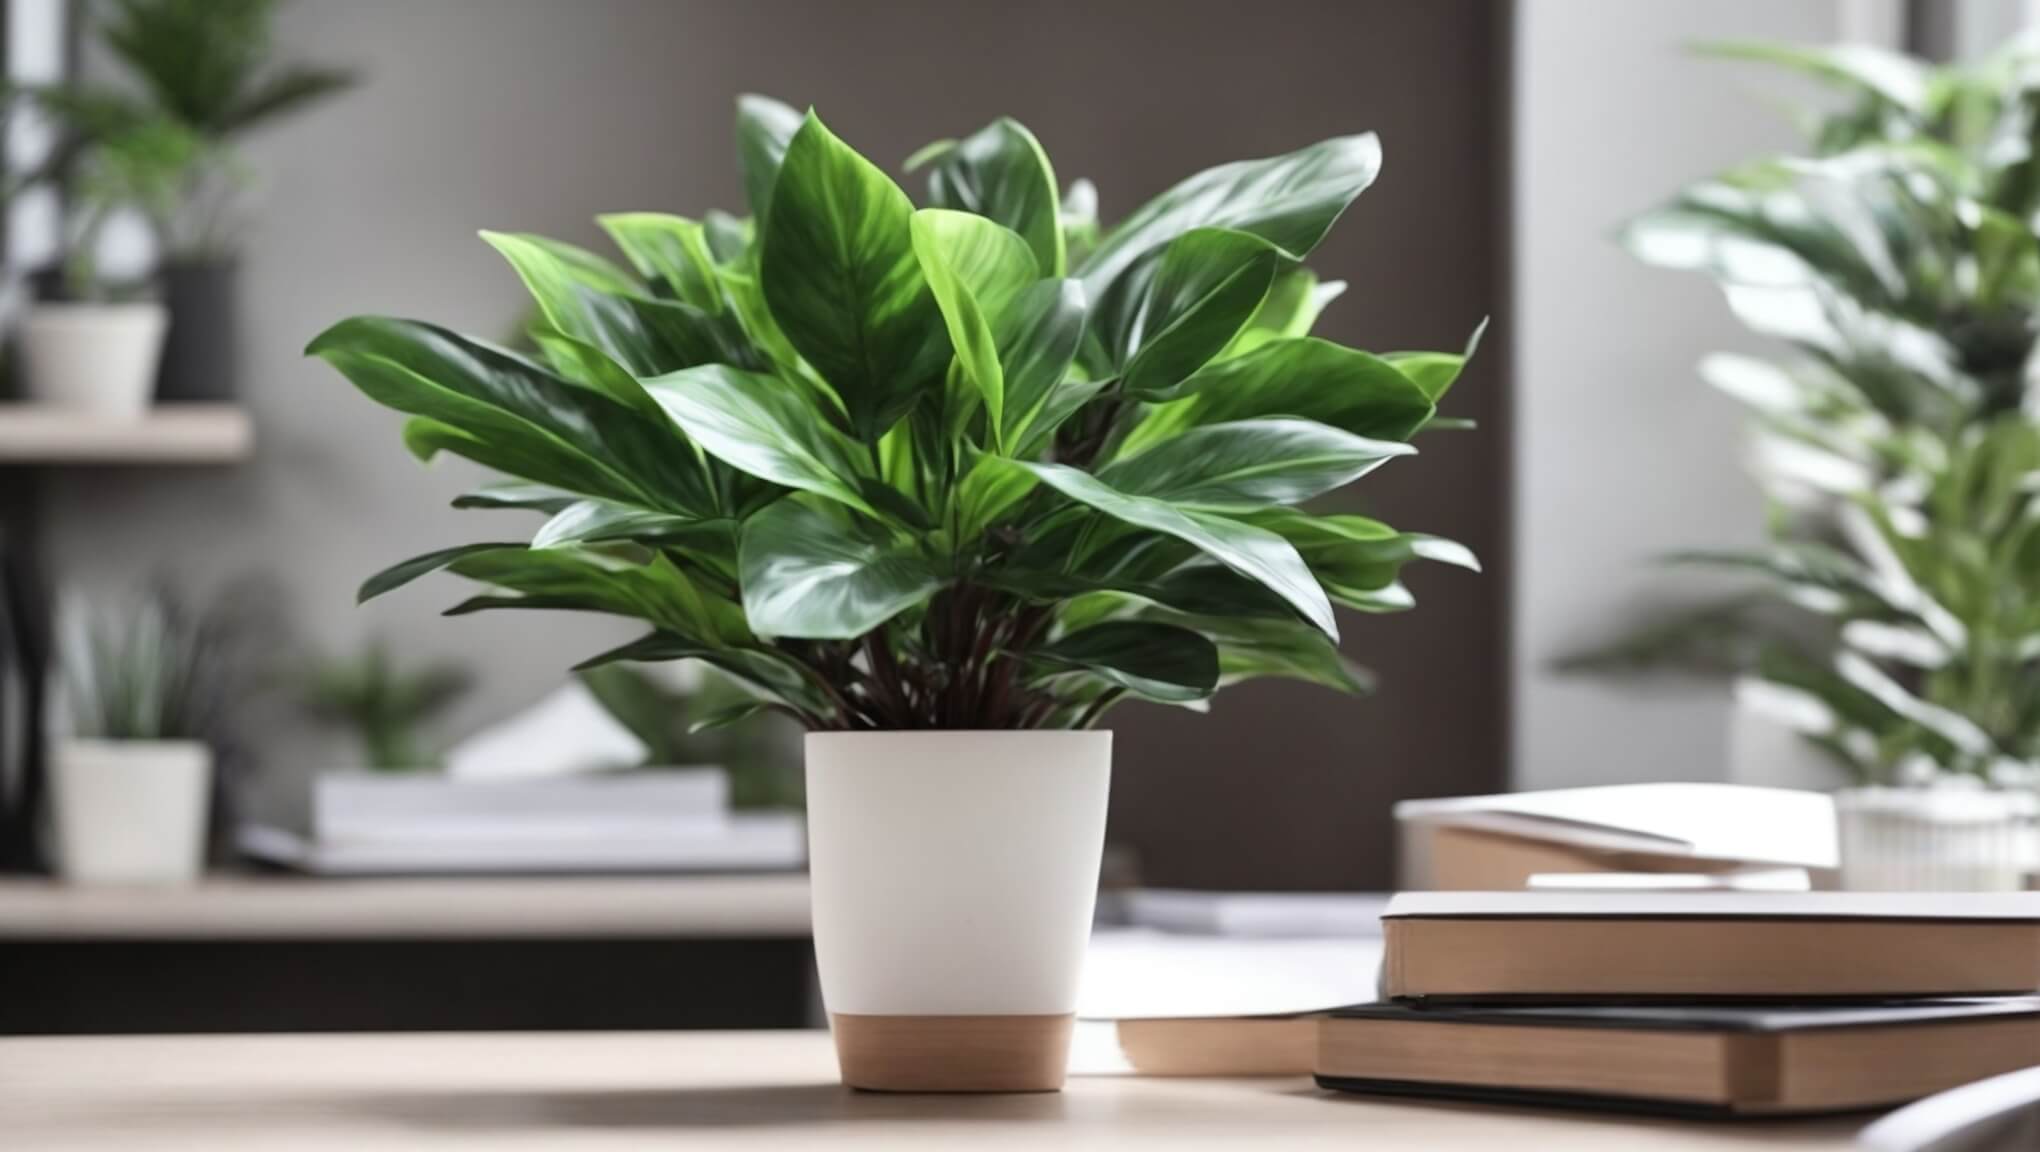  Какие искусственные растения подойдут для офиса?